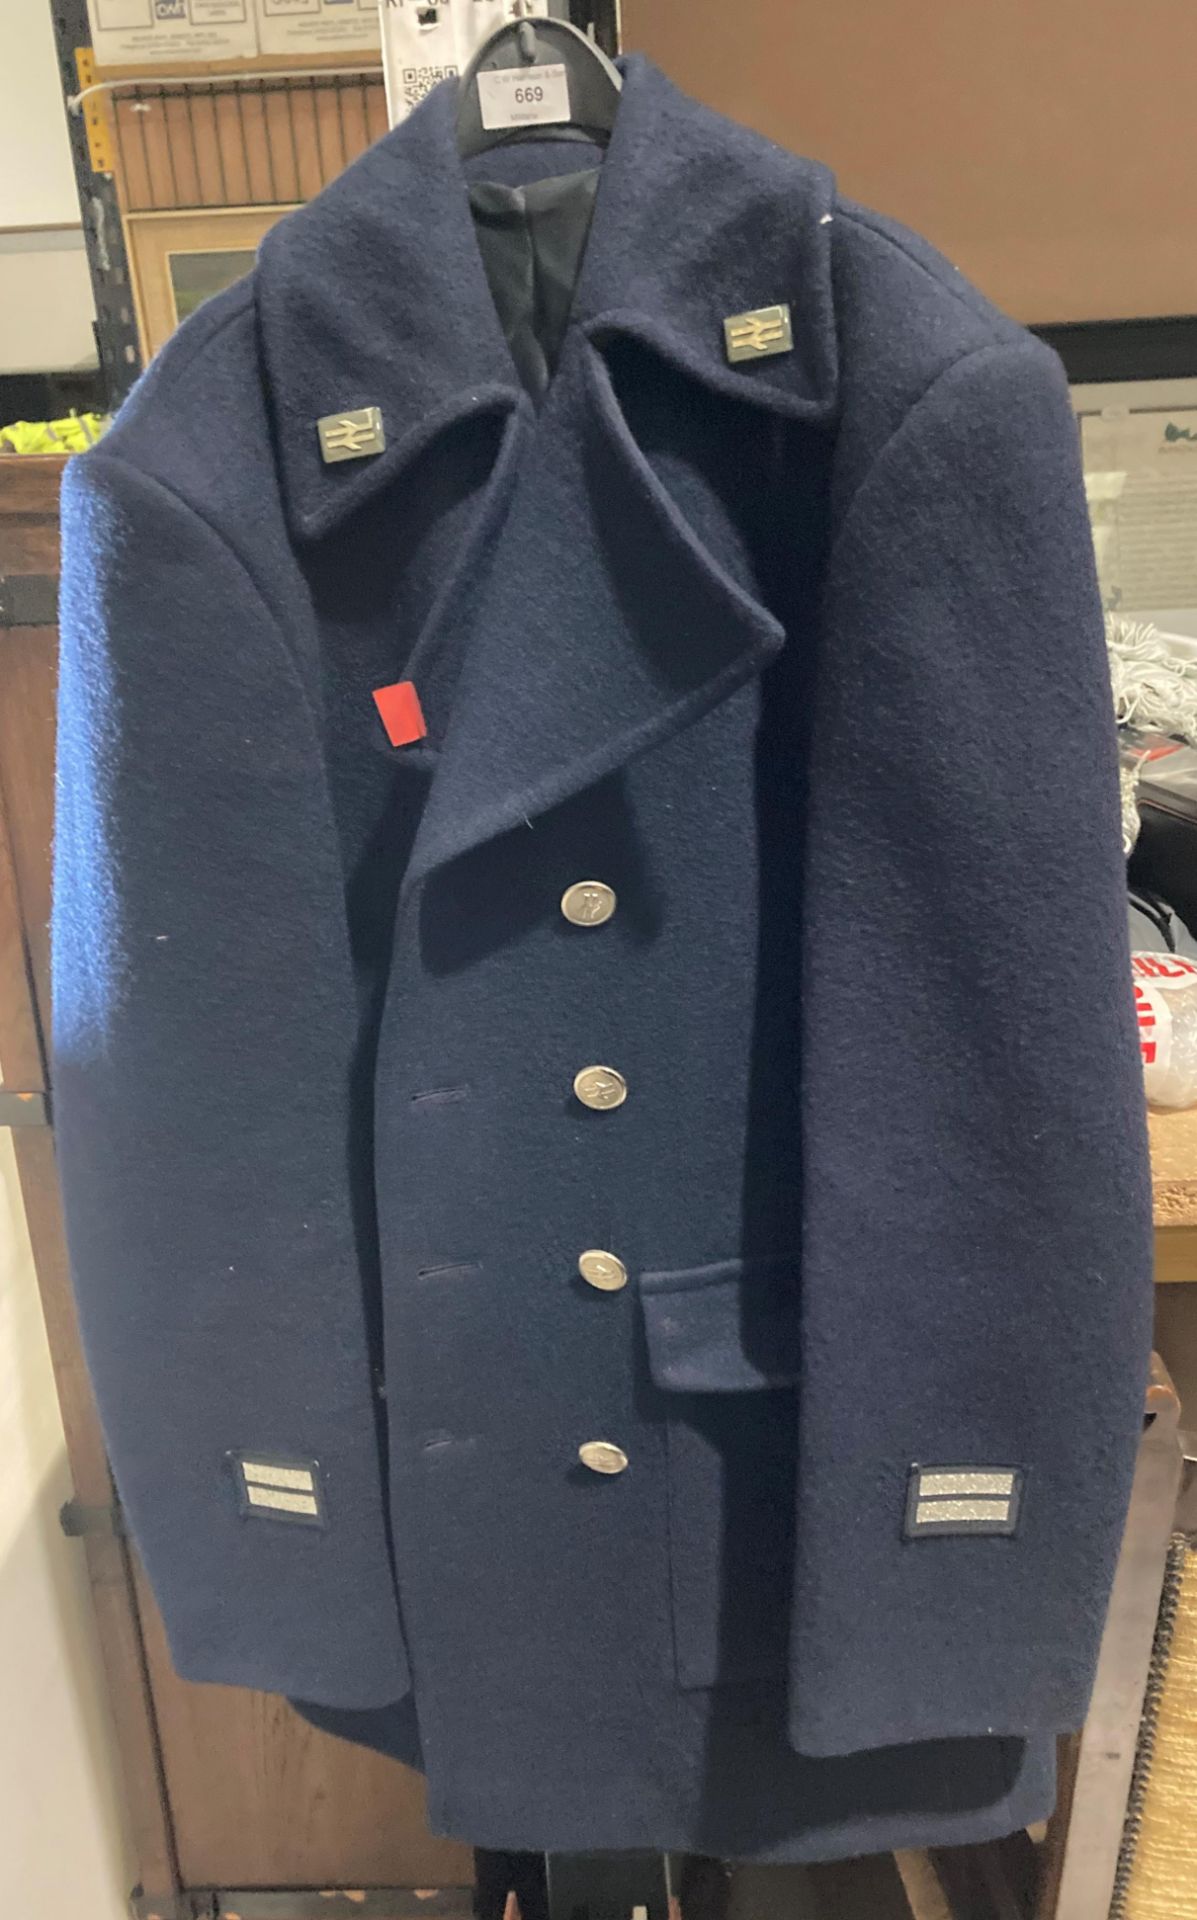 A British Rail overcoat in blue,